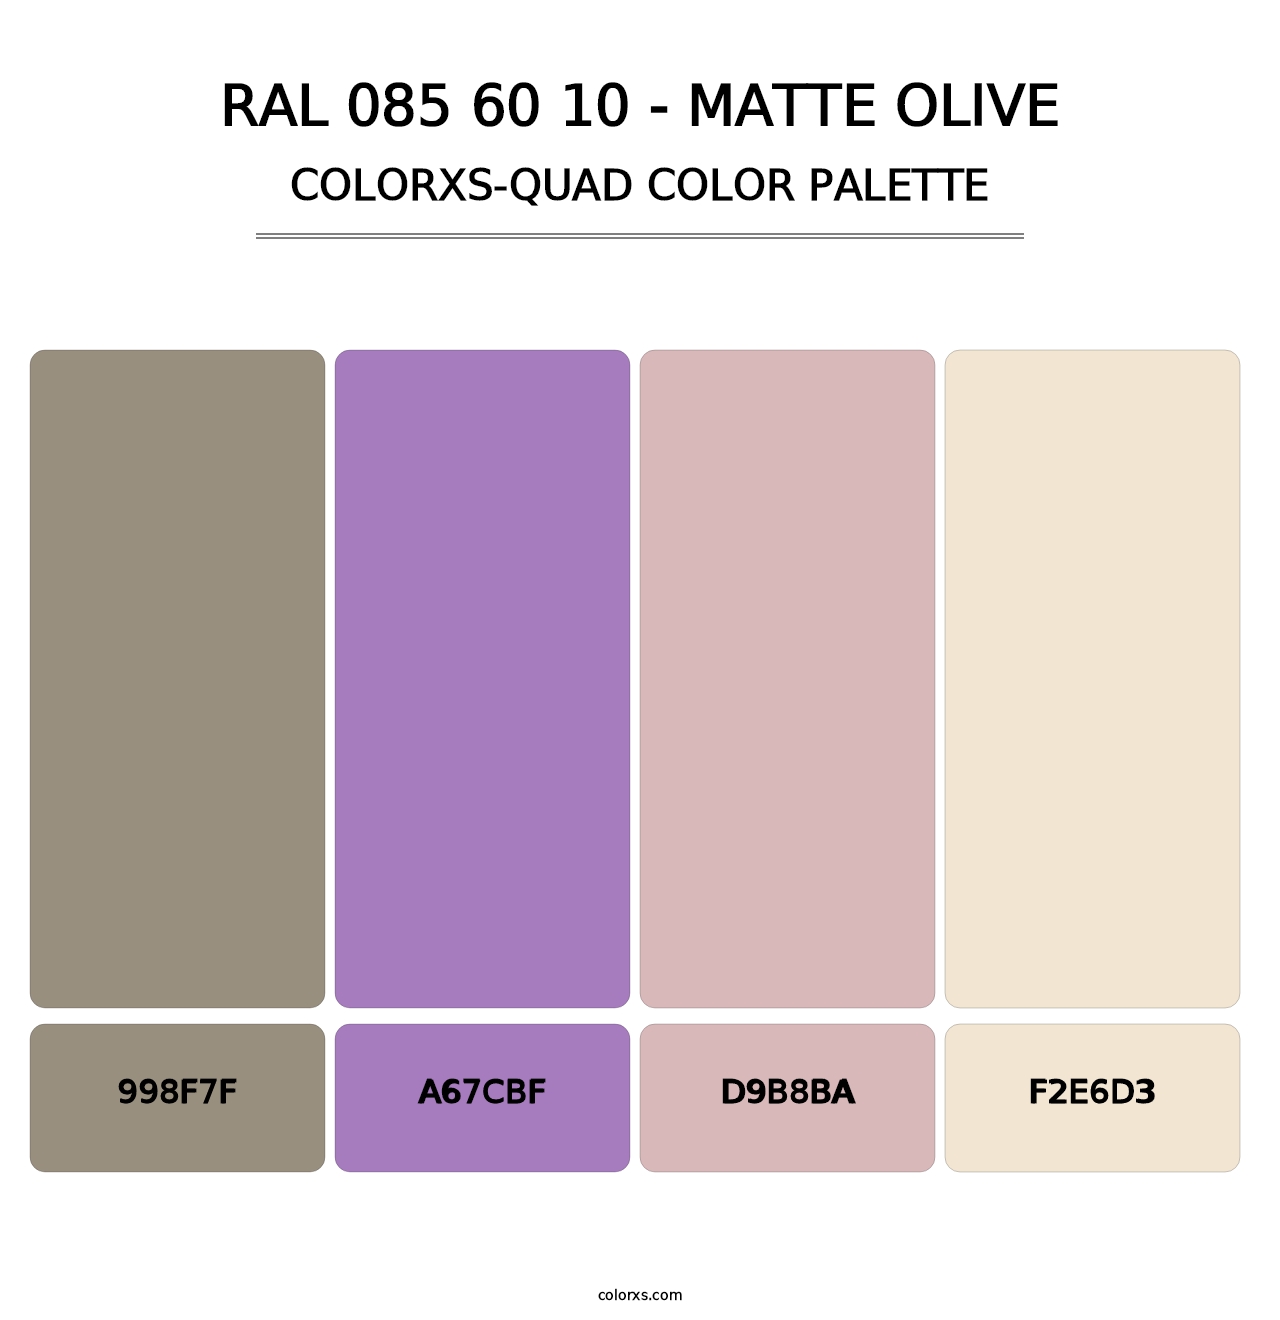 RAL 085 60 10 - Matte Olive - Colorxs Quad Palette